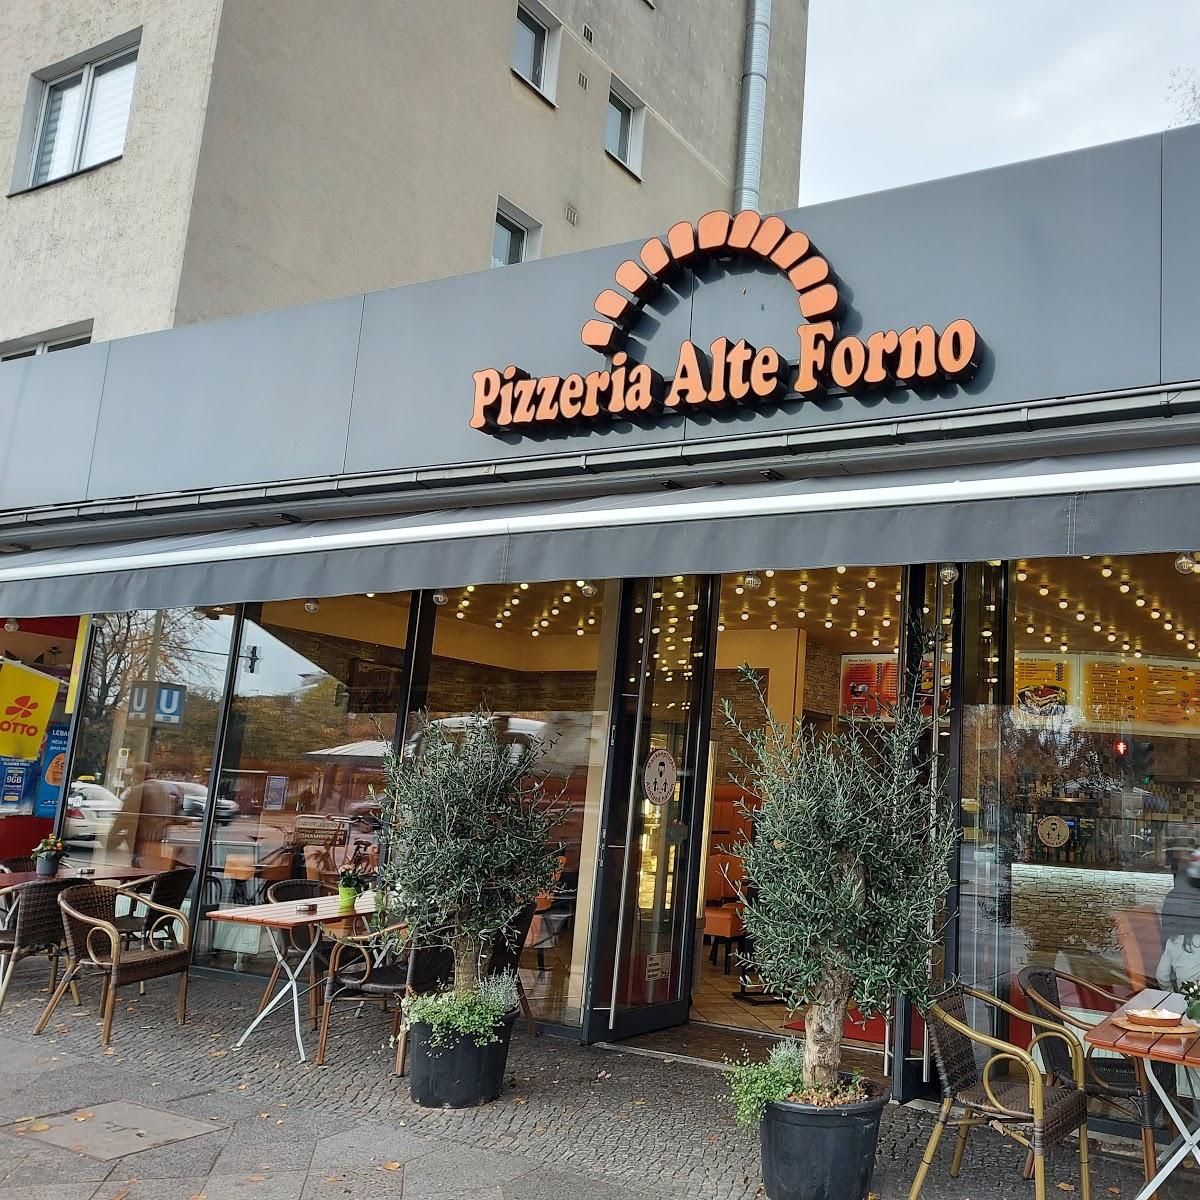 Restaurant "Alte Forno" in Berlin